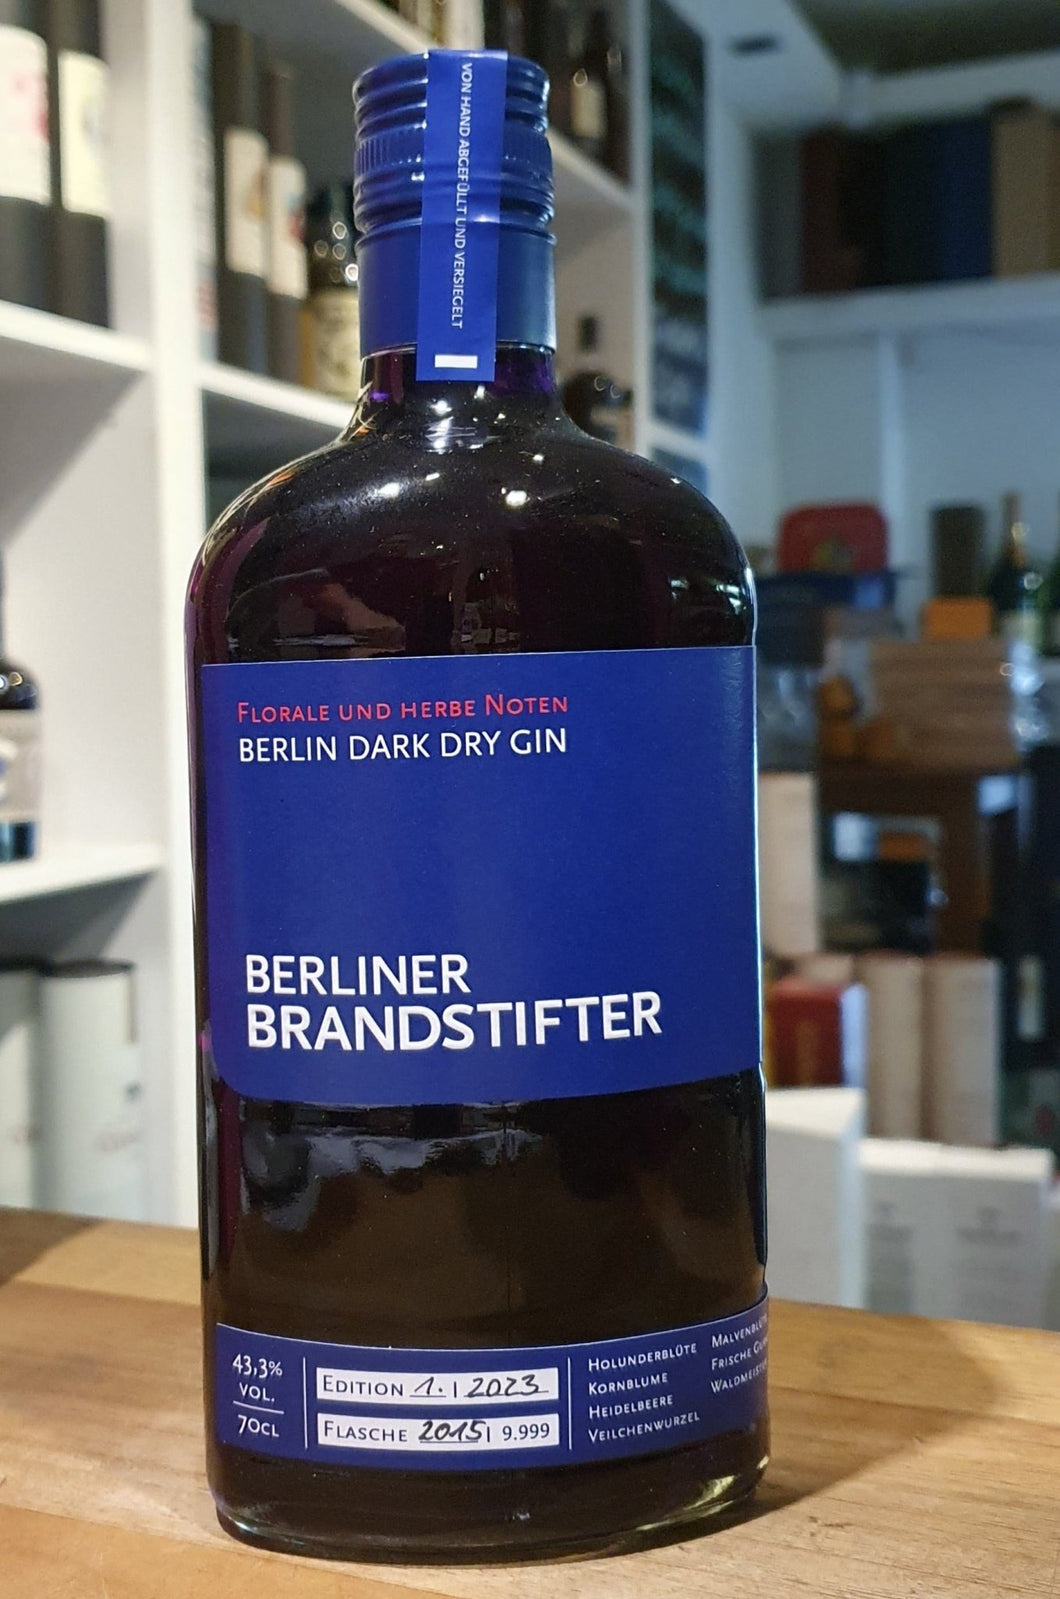 LETZTE 6 FLASCHEN   Brandstifter Dark Gin Edition 2022 0,7l 43,3%vol. Flasche Deutschland Germany  limitierte Edition 2022 auf 9999 Flaschen.